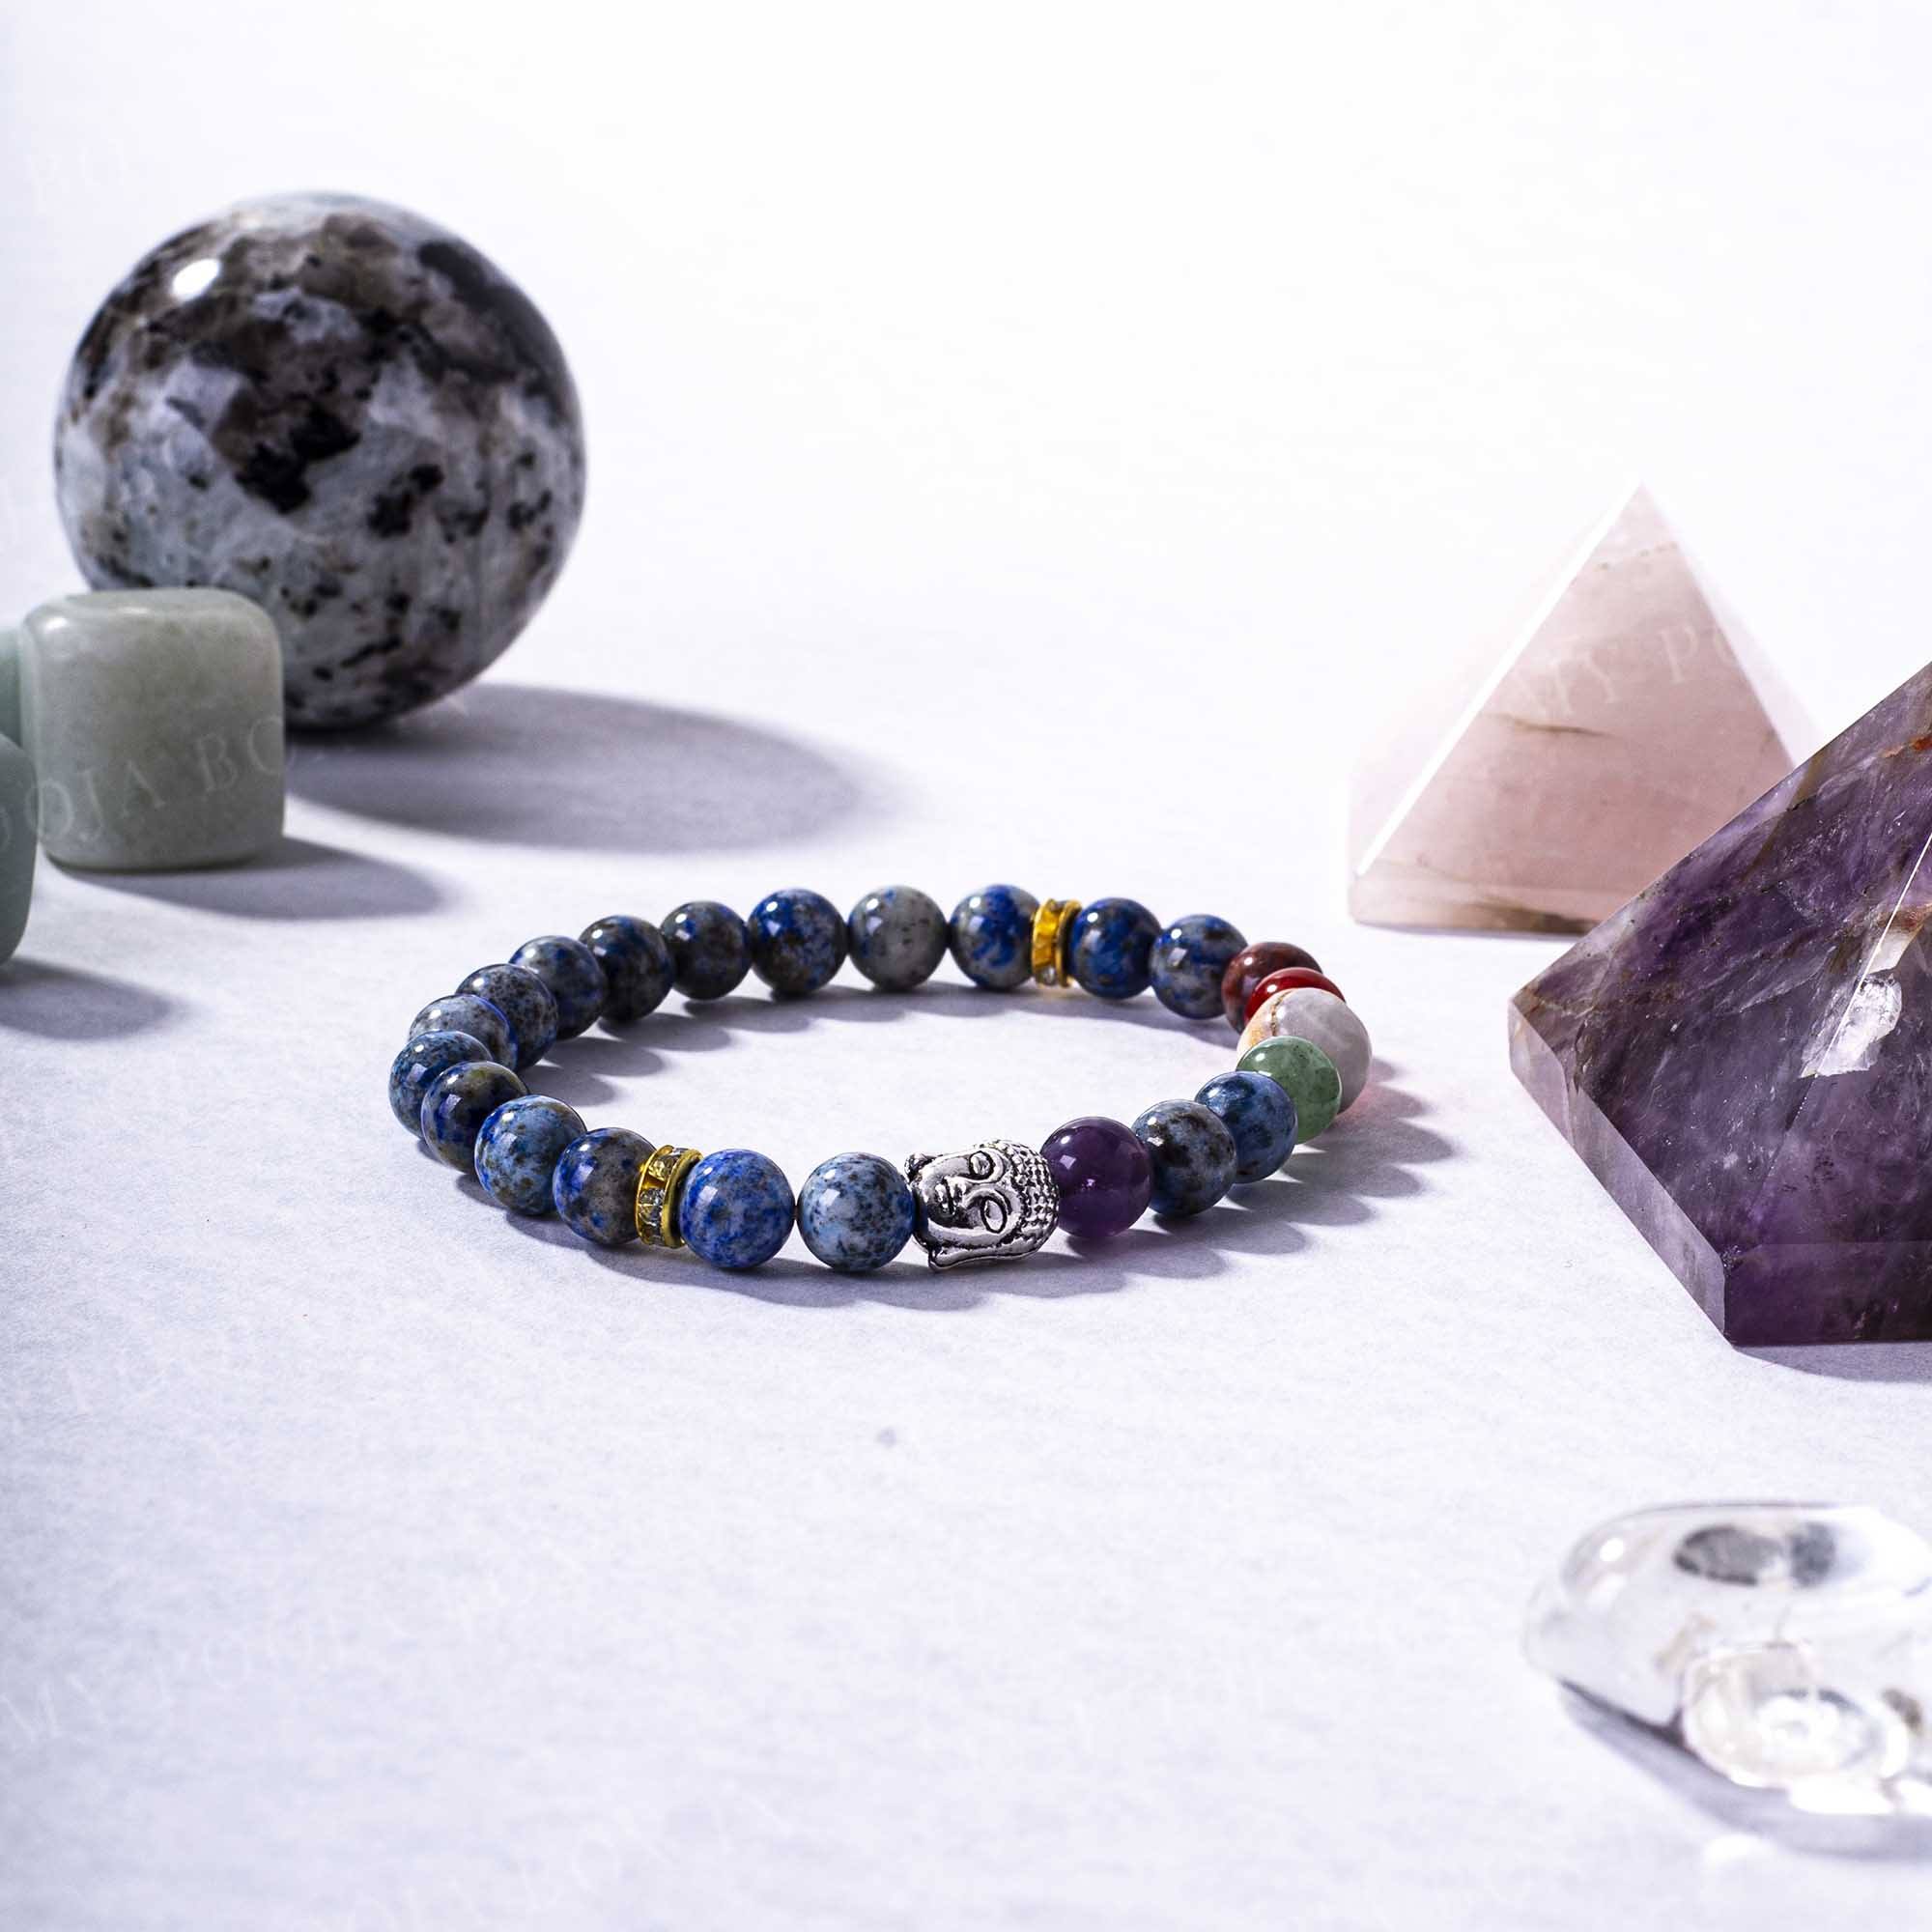 Lapis Lazuli Gemstone Bracelet Gemstone Jewelry with Healing Stones Wish Bracelet Zodiac Sign